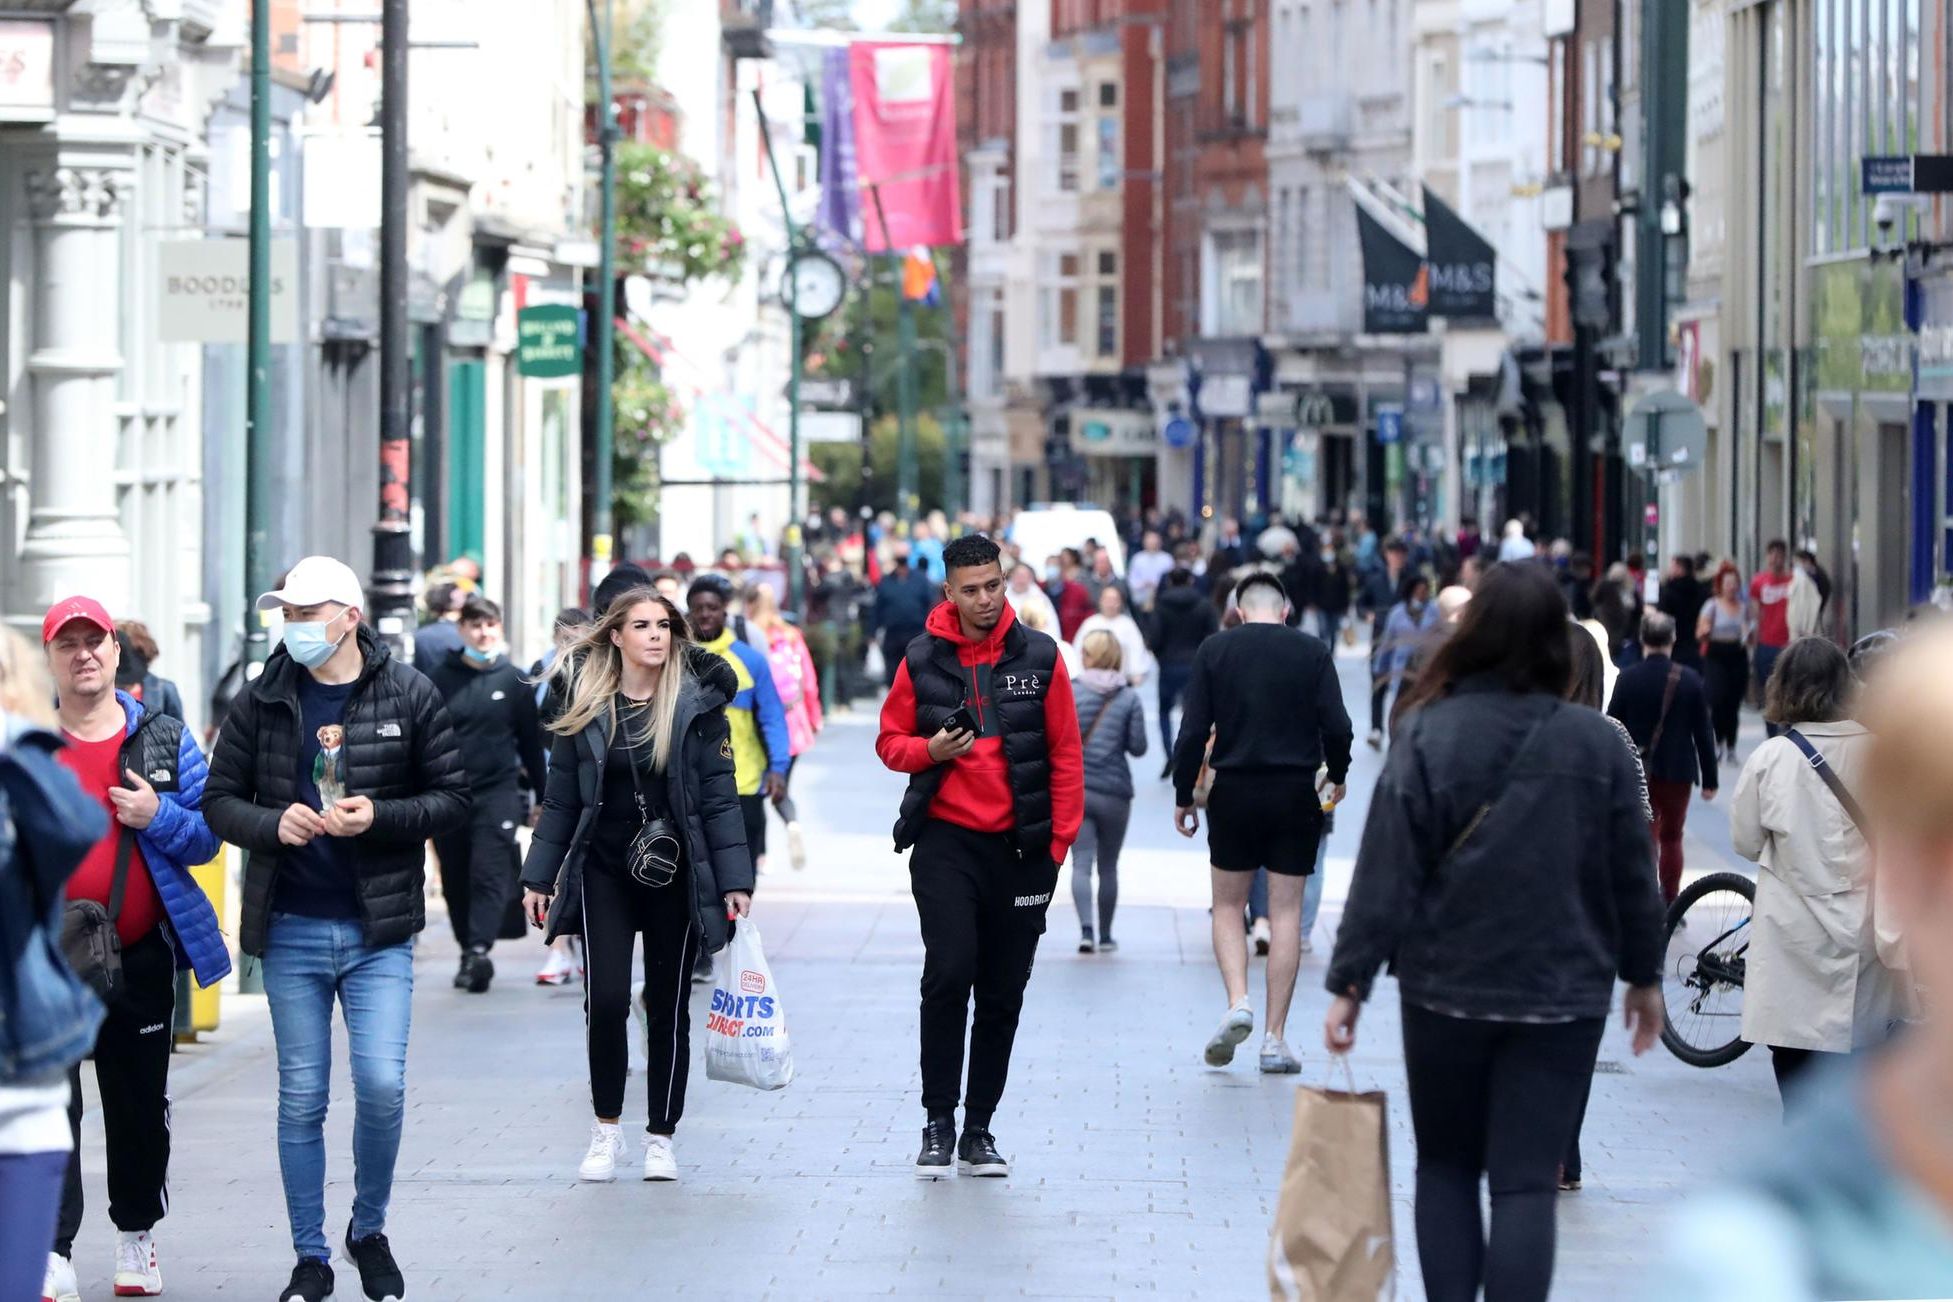 Ирландия — самая дорогая в ЕС по потребительским ценам, на 46% выше среднего